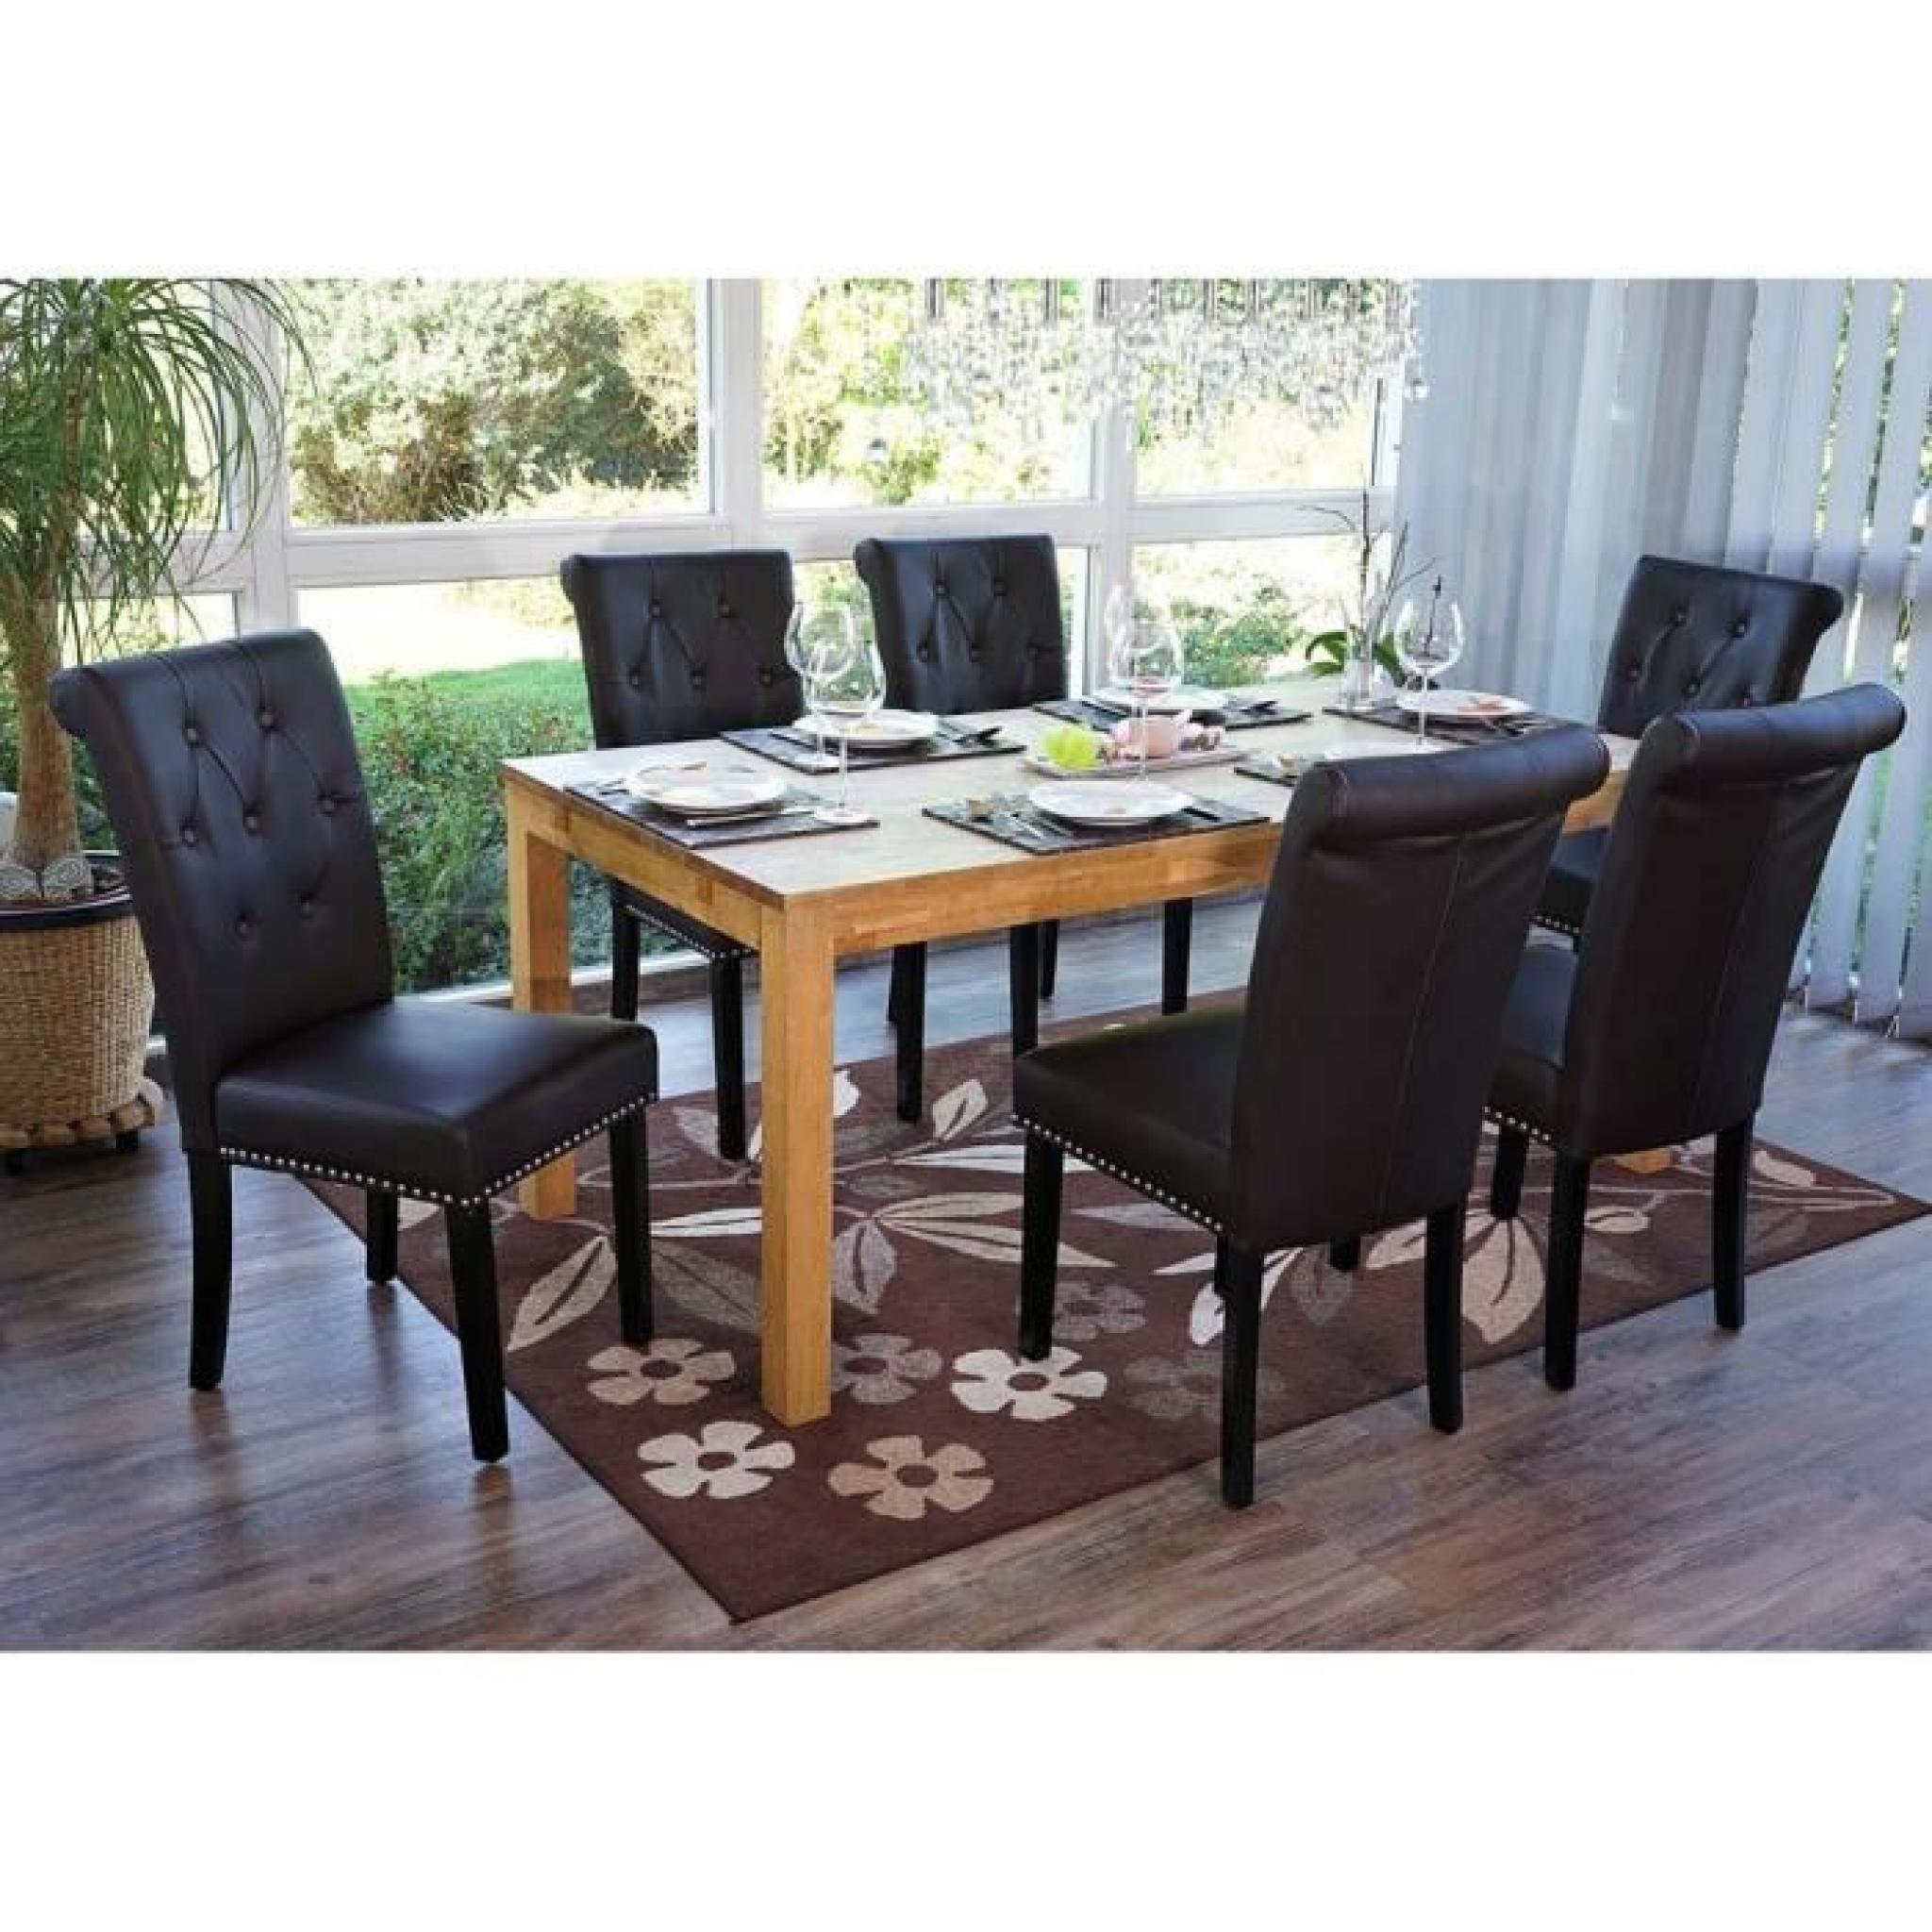 Lot de 6 chaises pour salle à manger en PU coloris marron - Dim: 98 x 47 x 62 cm